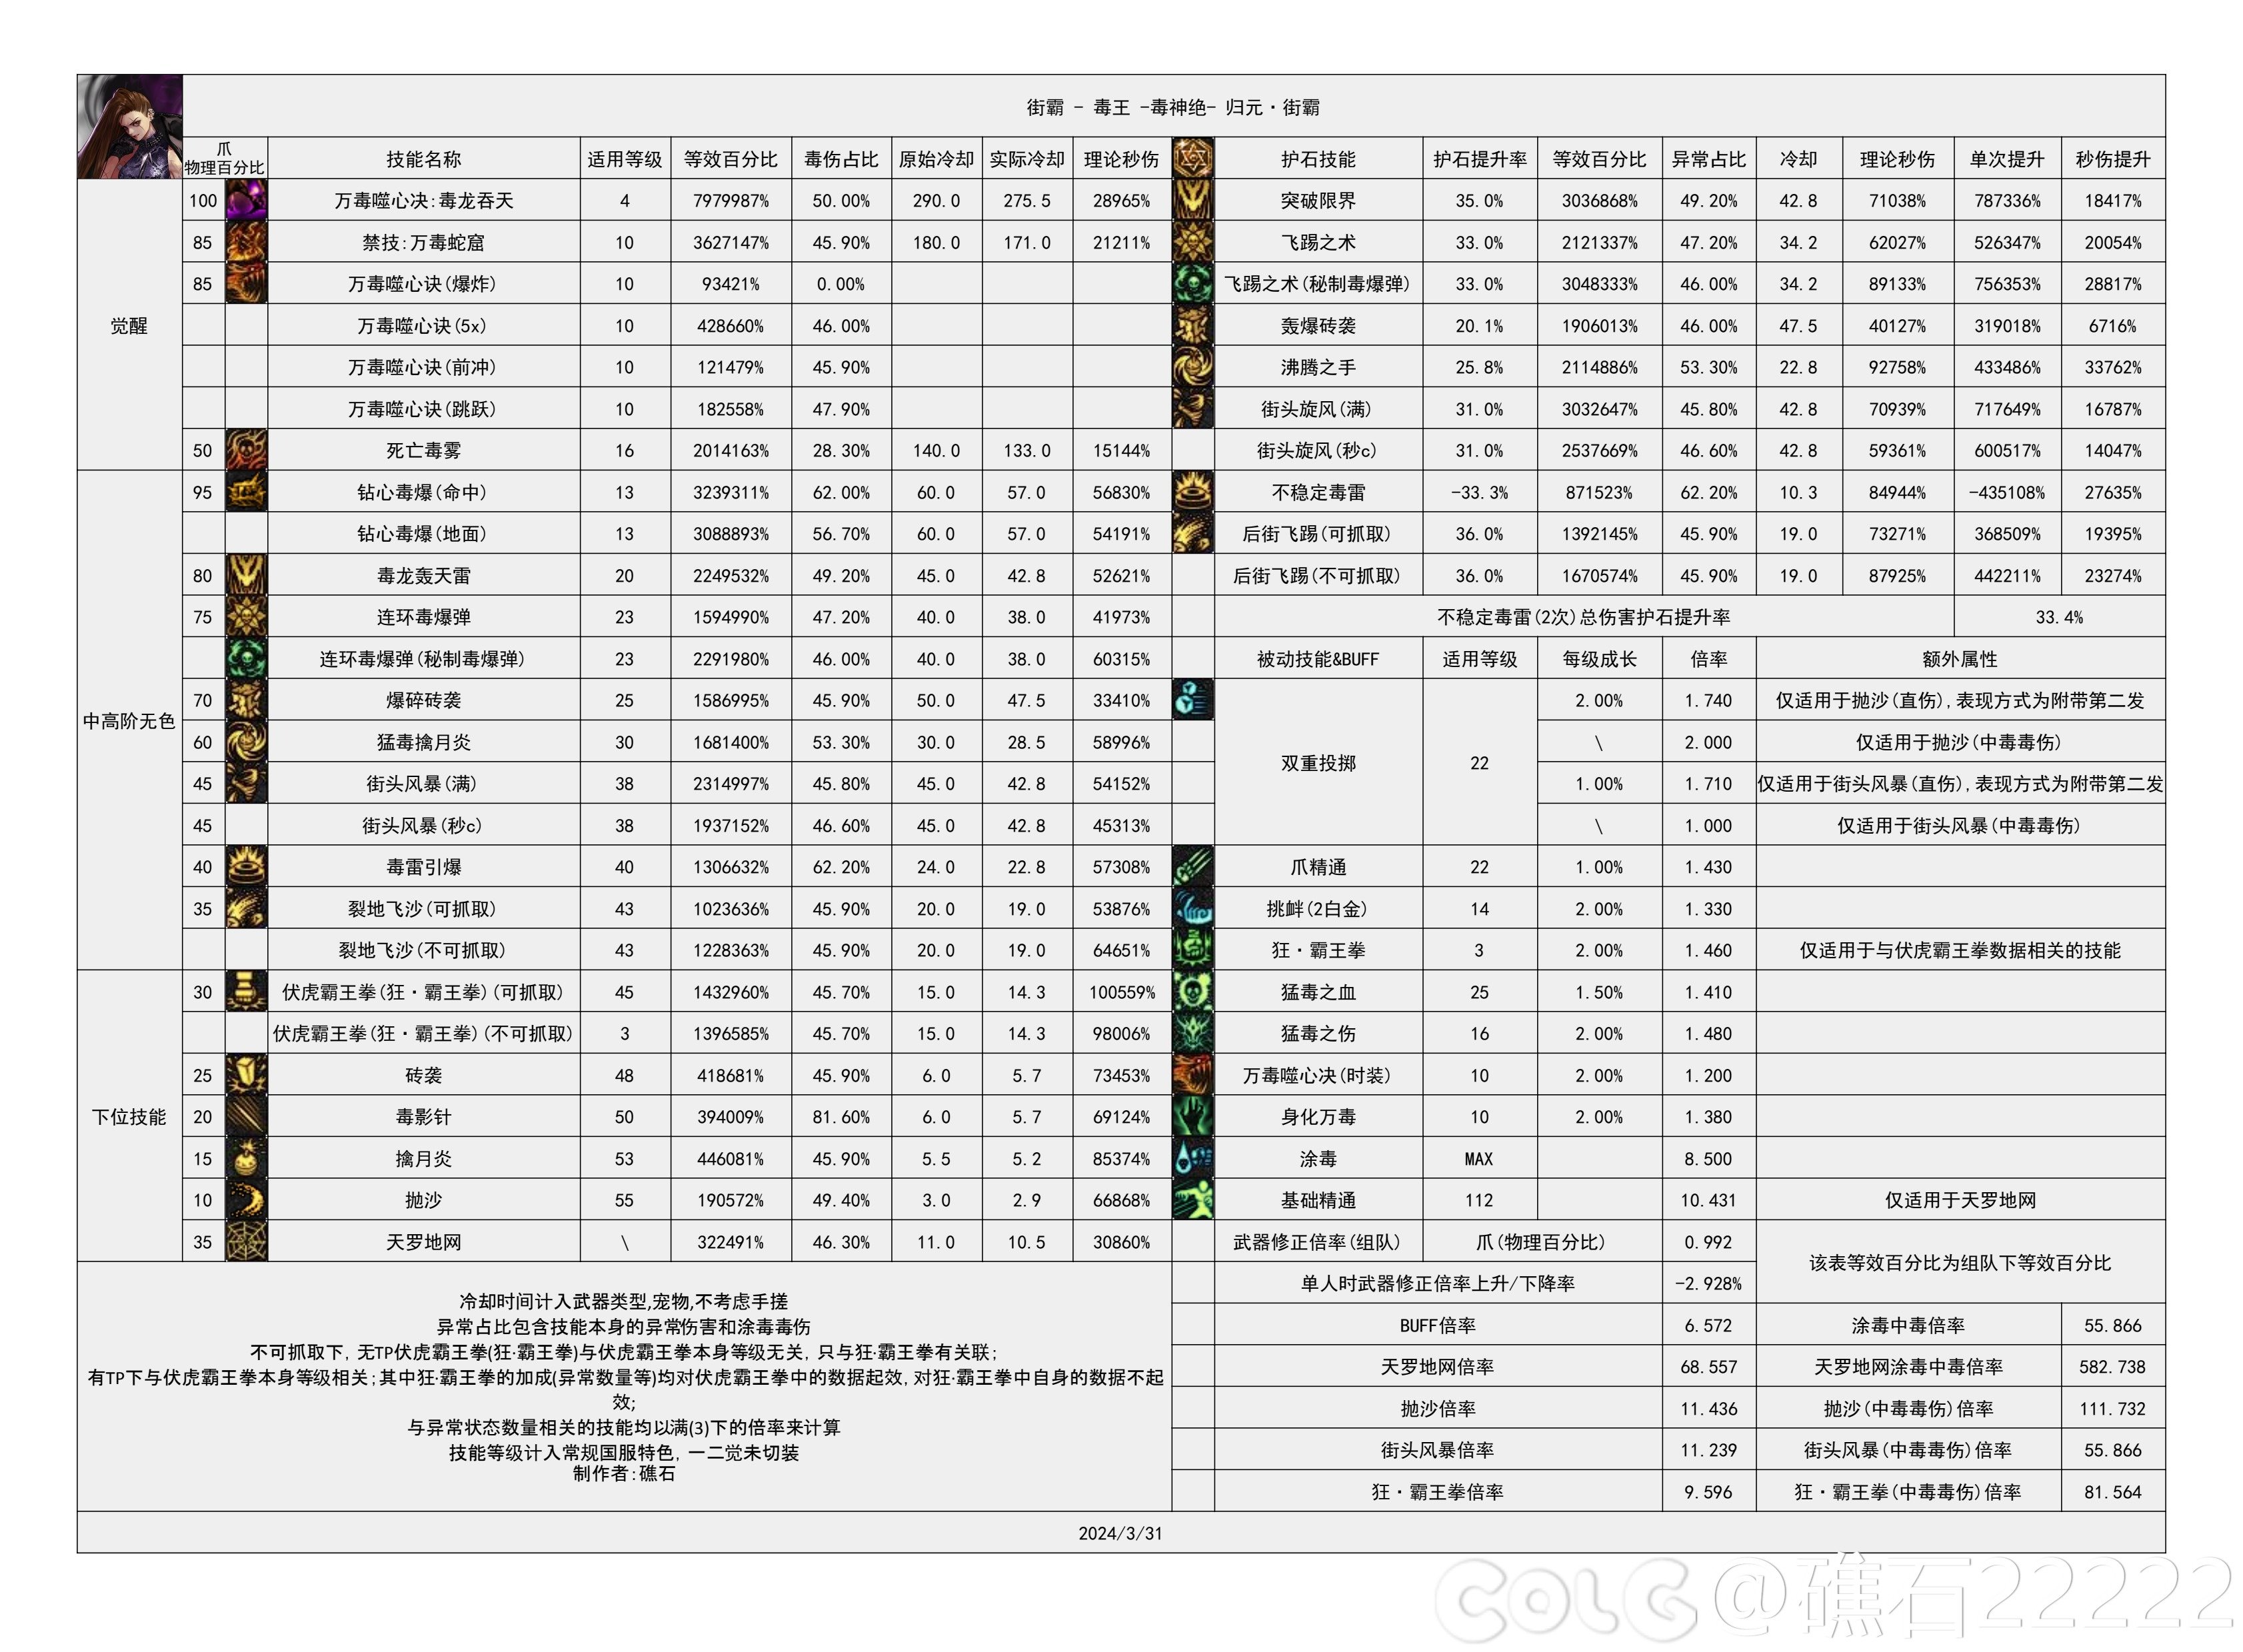 【国服现状】110版本输出职业数据表(国正5.15)(最新)26